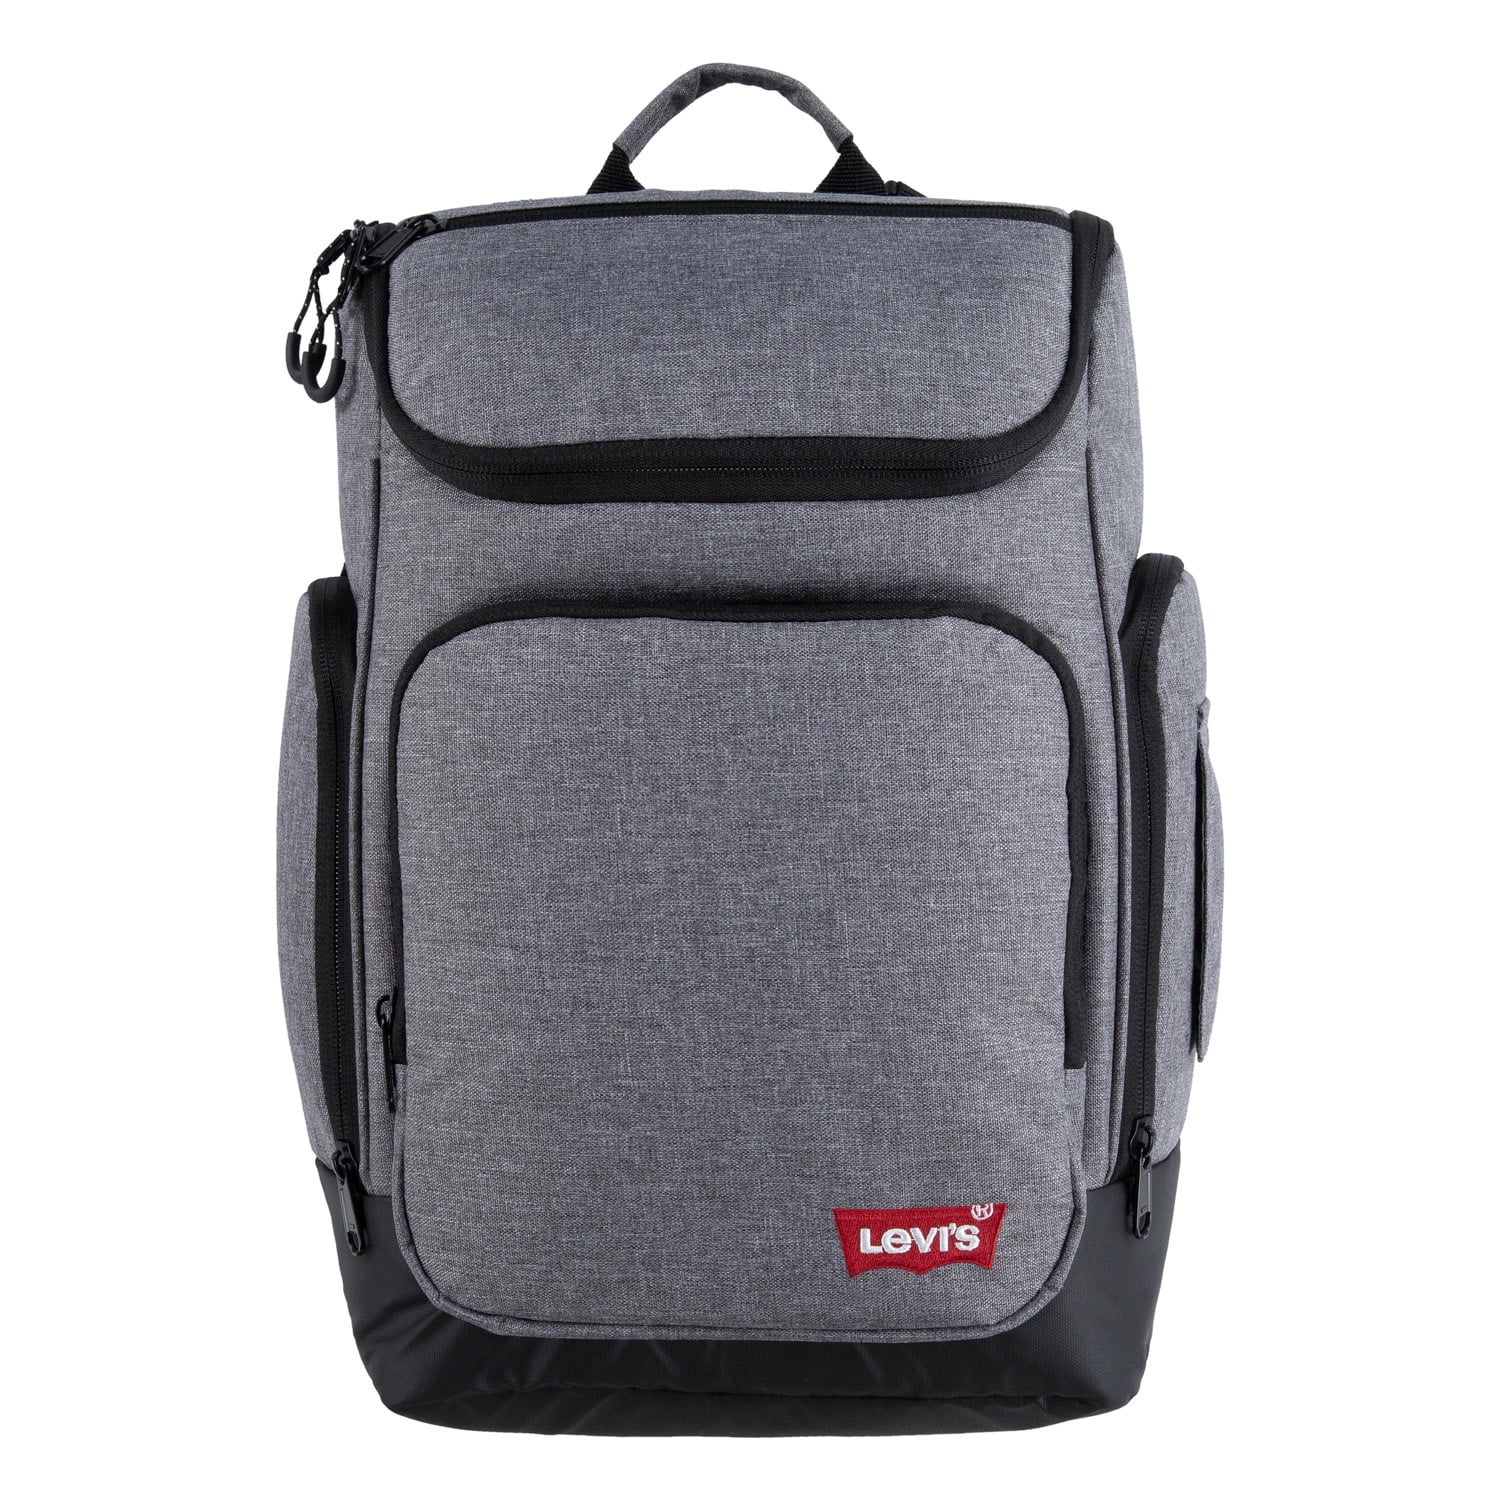 Levi's Unisex Top Loader Backpack Black 